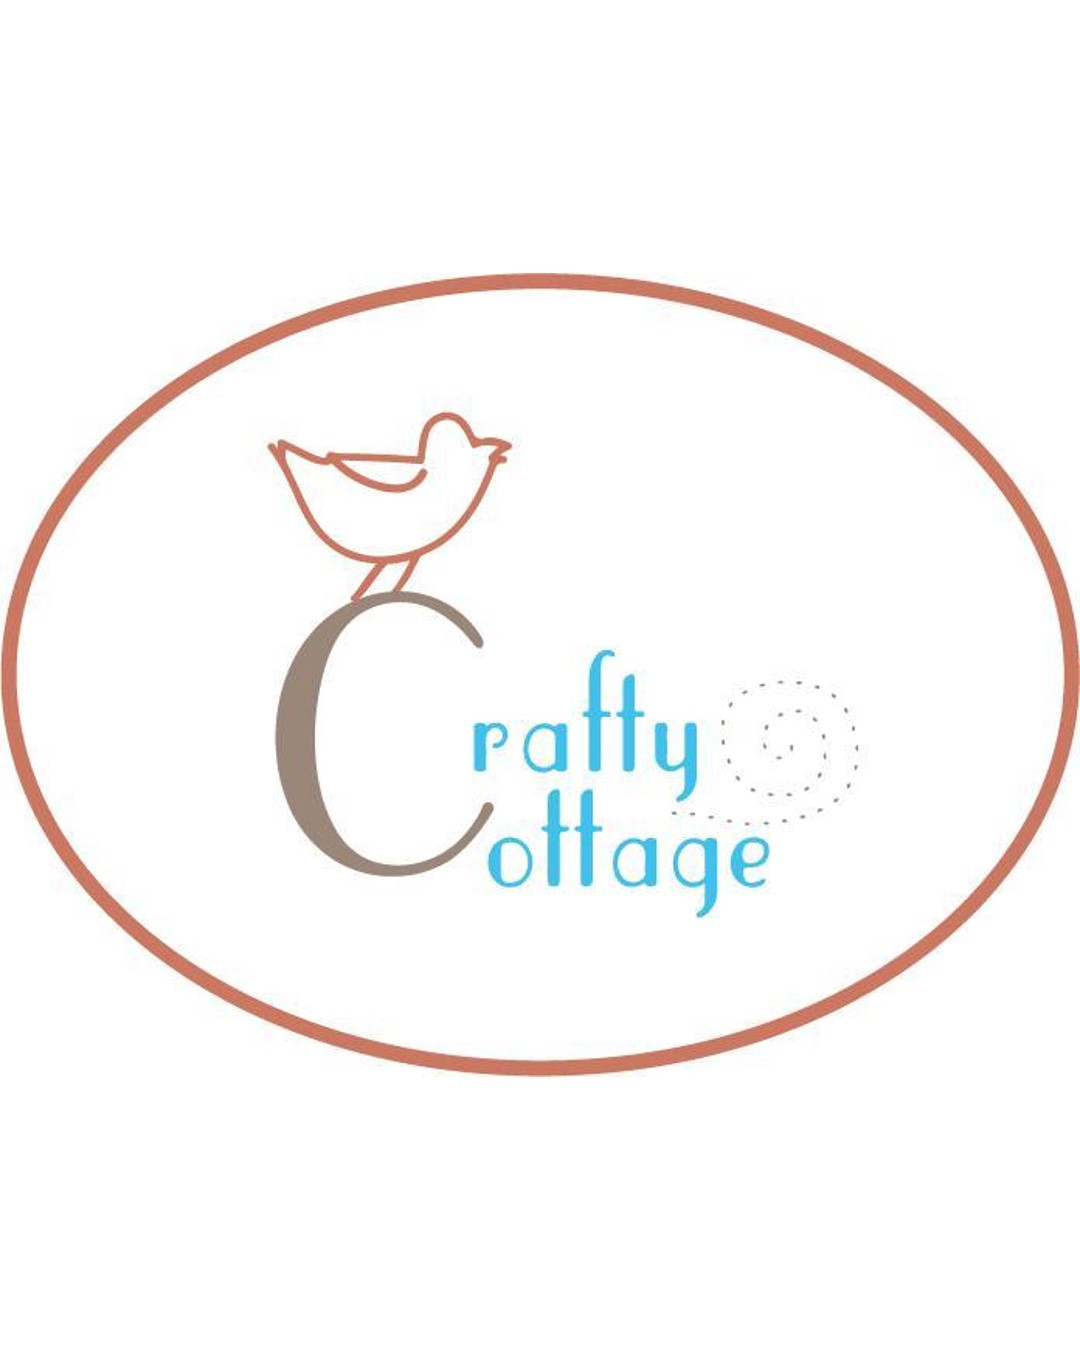  Crafty Cottage Center